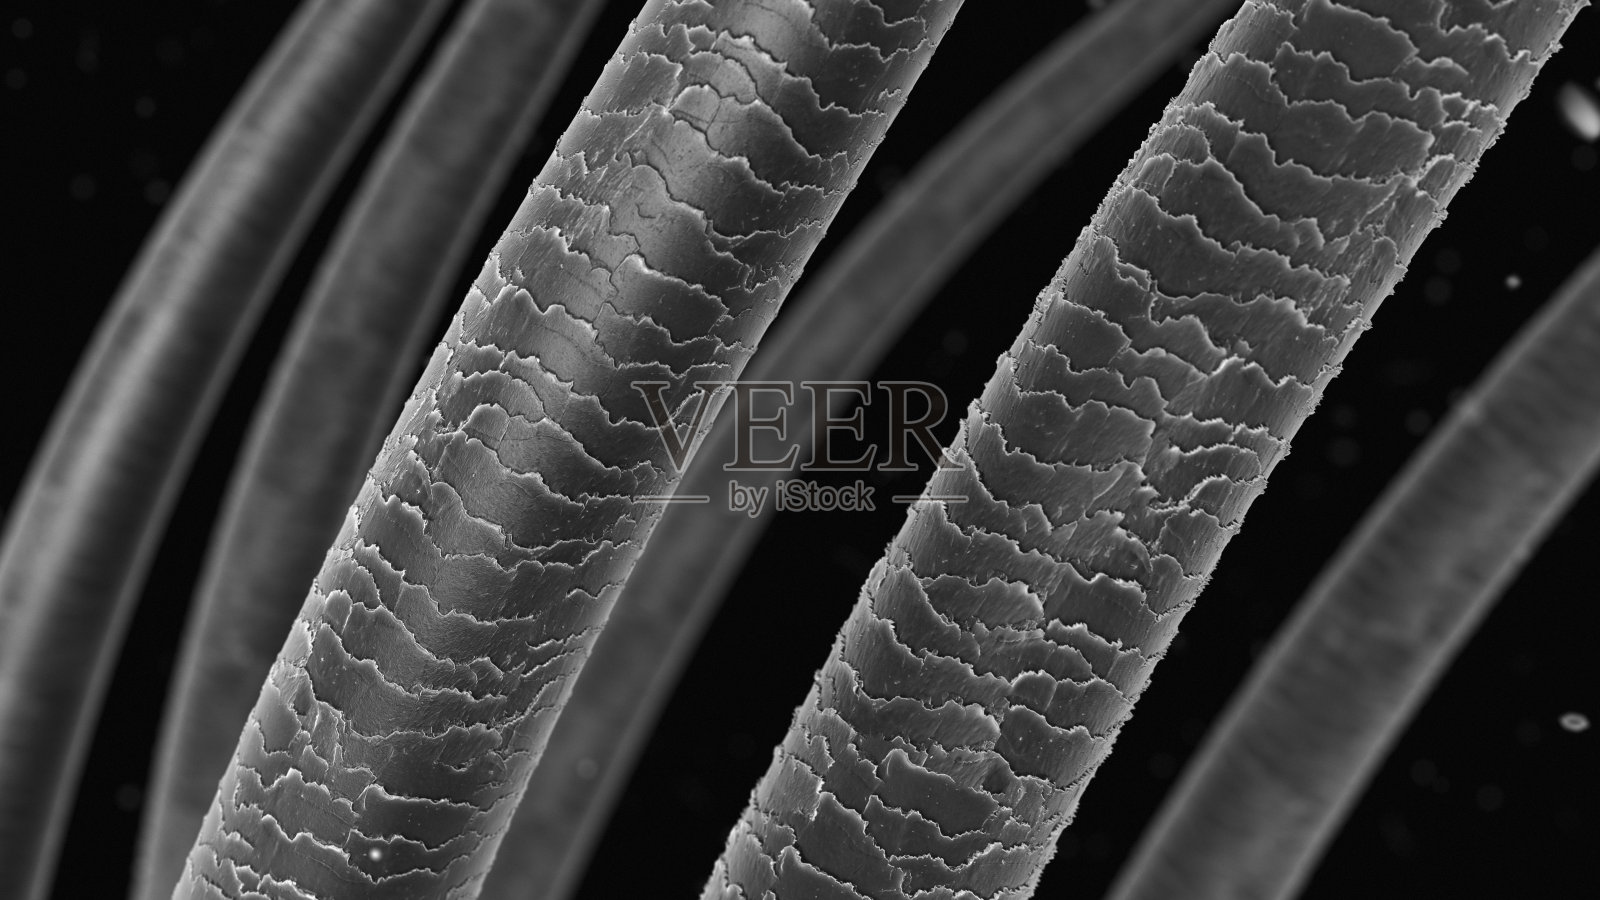 用光学显微镜观察头发毛鳞片 | xjpvictor's Blog